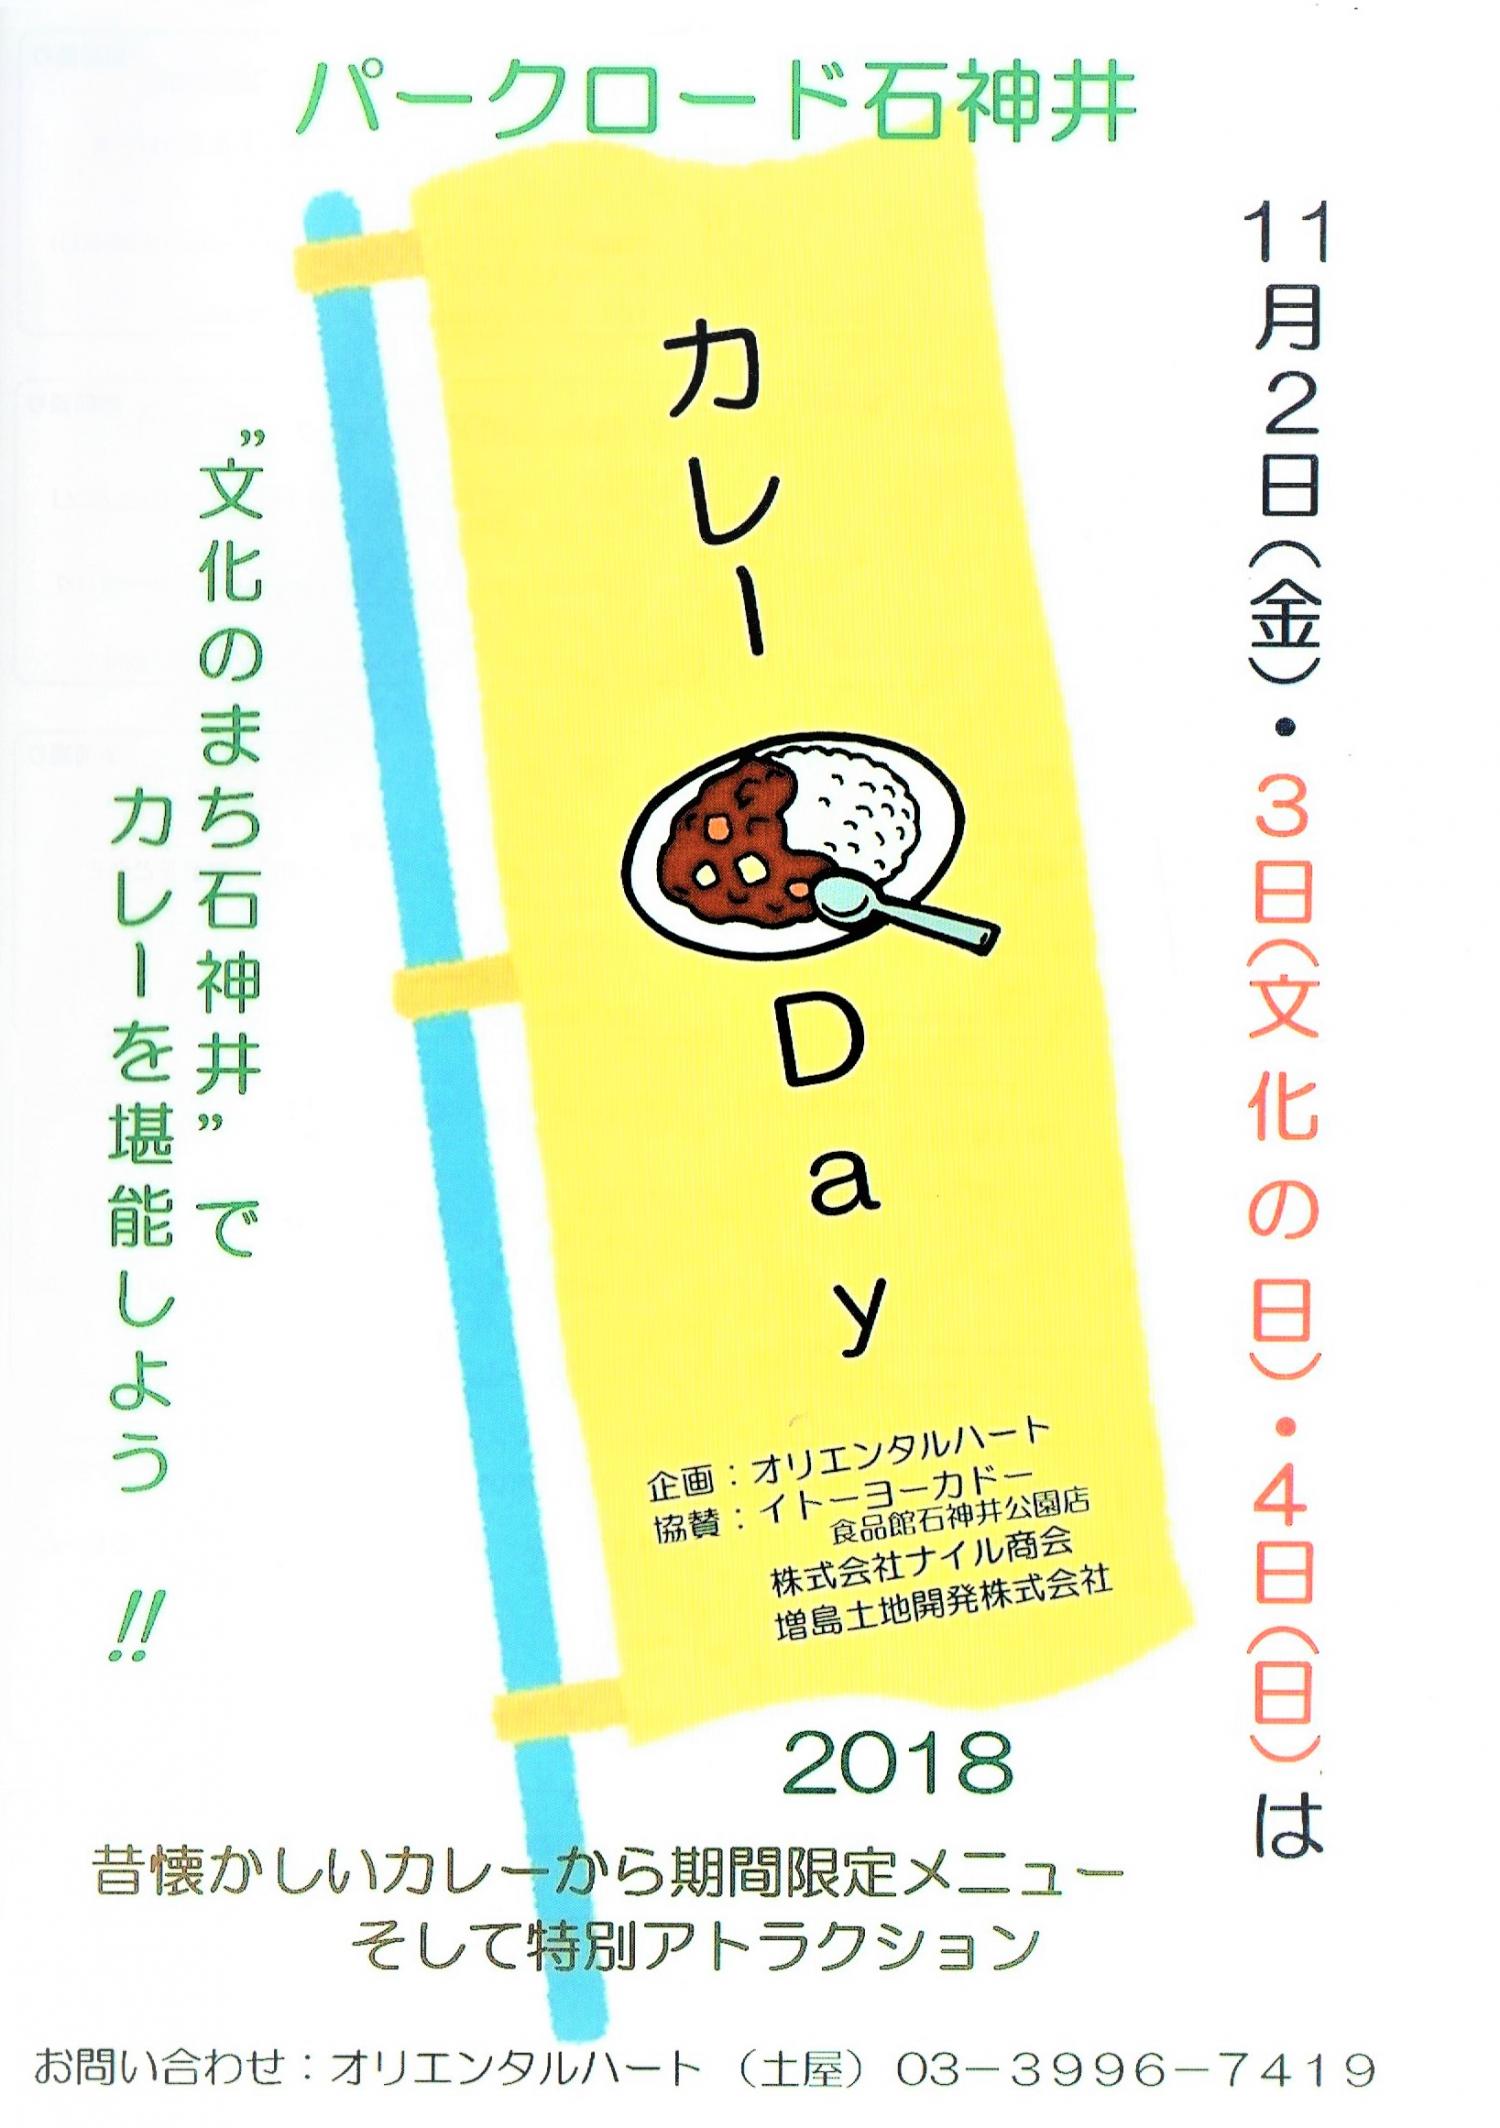 パークロード石神井カレーDay 2018